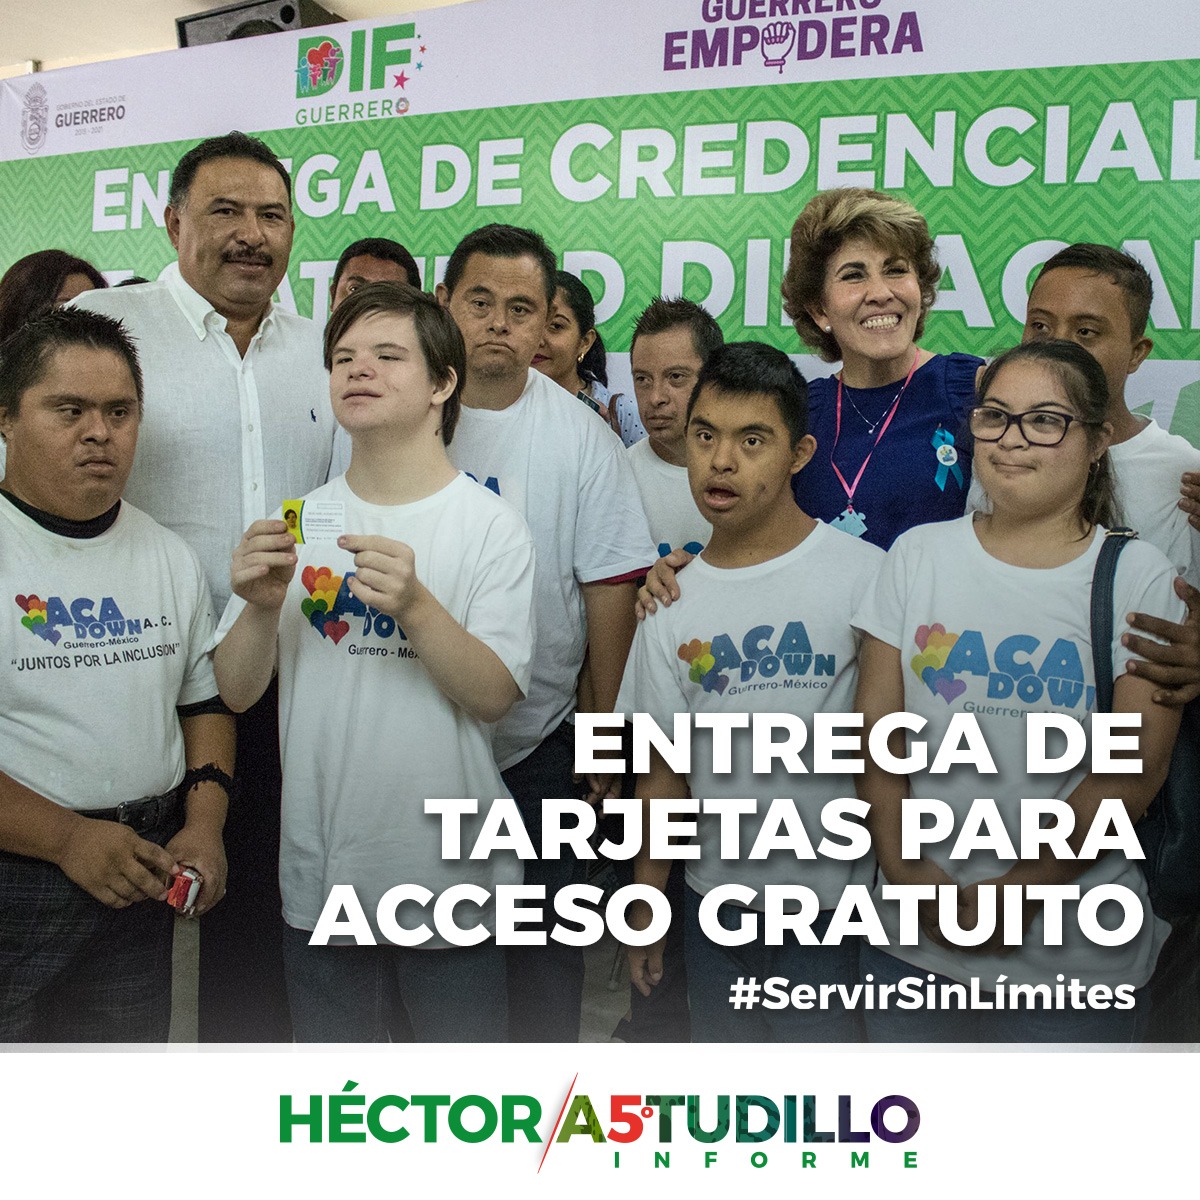 Gracias a la generosidad del gobernador @HectorAstudillo, y de la presidenta del @DIFGuerrero, @MercedesCalvo desde 2018, cualquier persona que acredite su tipo de discapacidad ingresa de manera gratuita en las estaciones y autobuses de #ACABÚS.